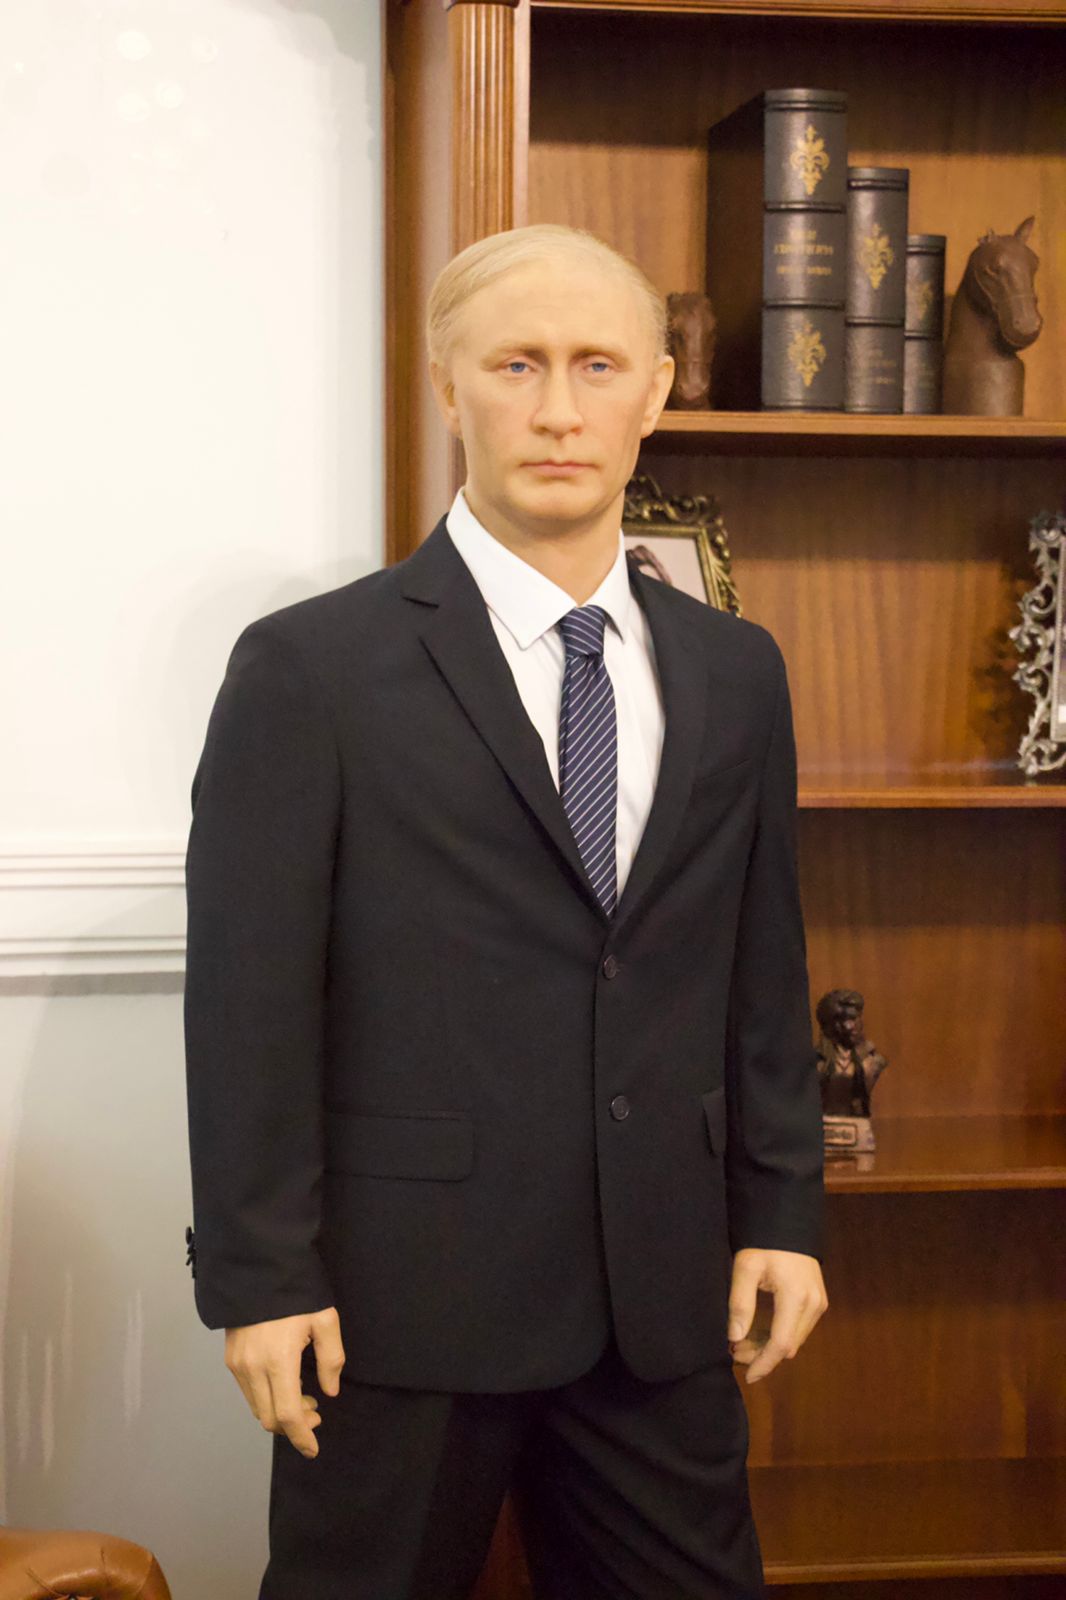 Estátua de Putin é removida de Museu de Cera em Gramado